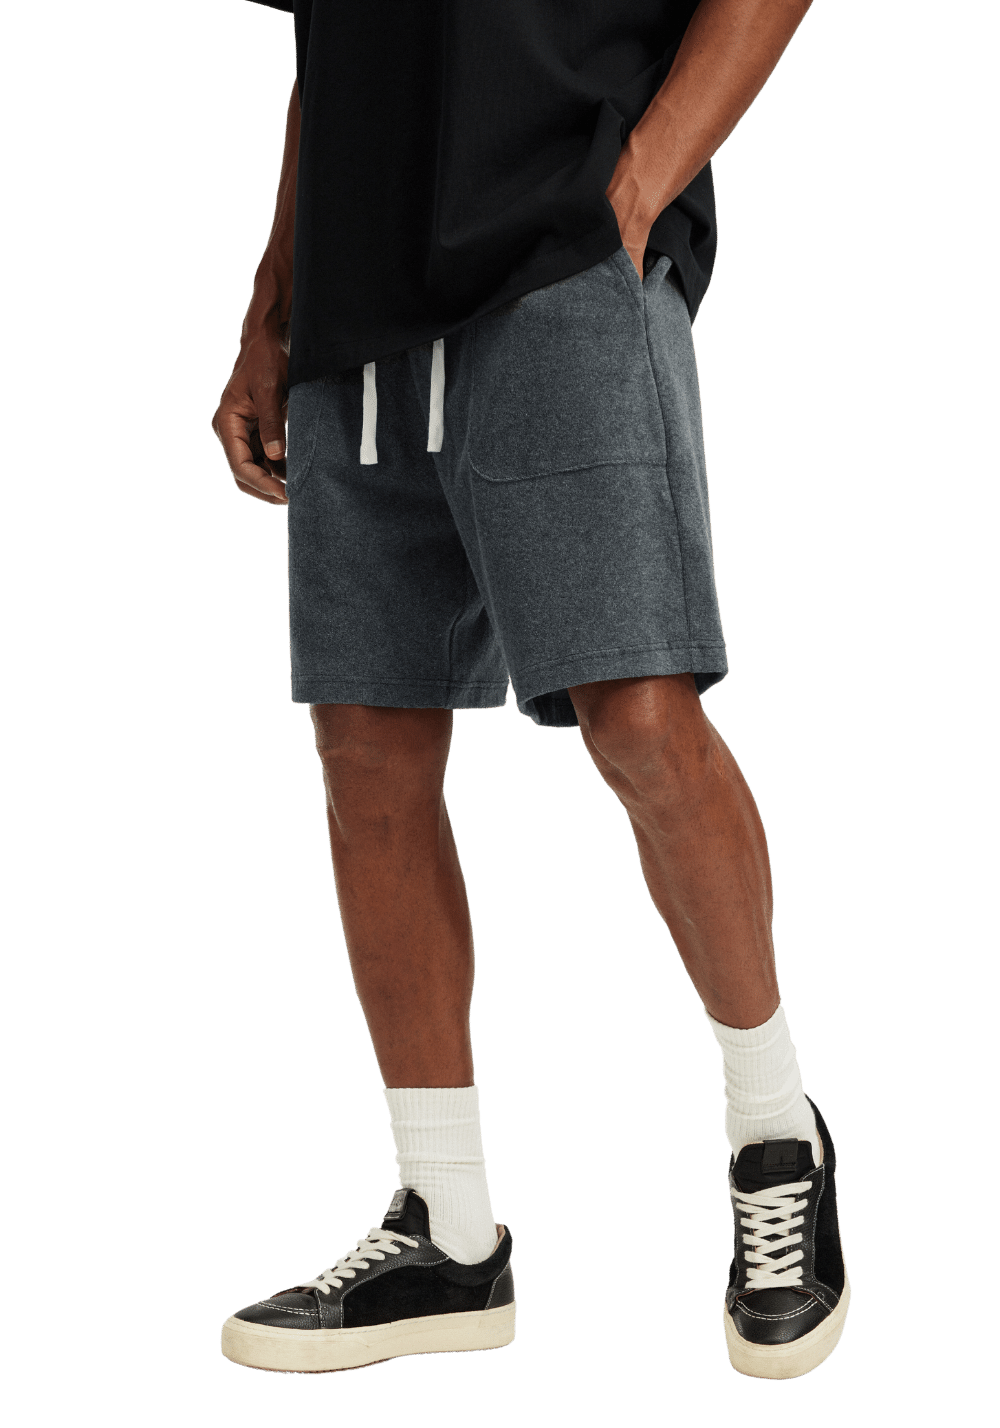 Plush Structure Pocket Shorts - PSYLOS 1, Plush Structure Pocket Shorts, Shorts, Boneless, PSYLOS 1